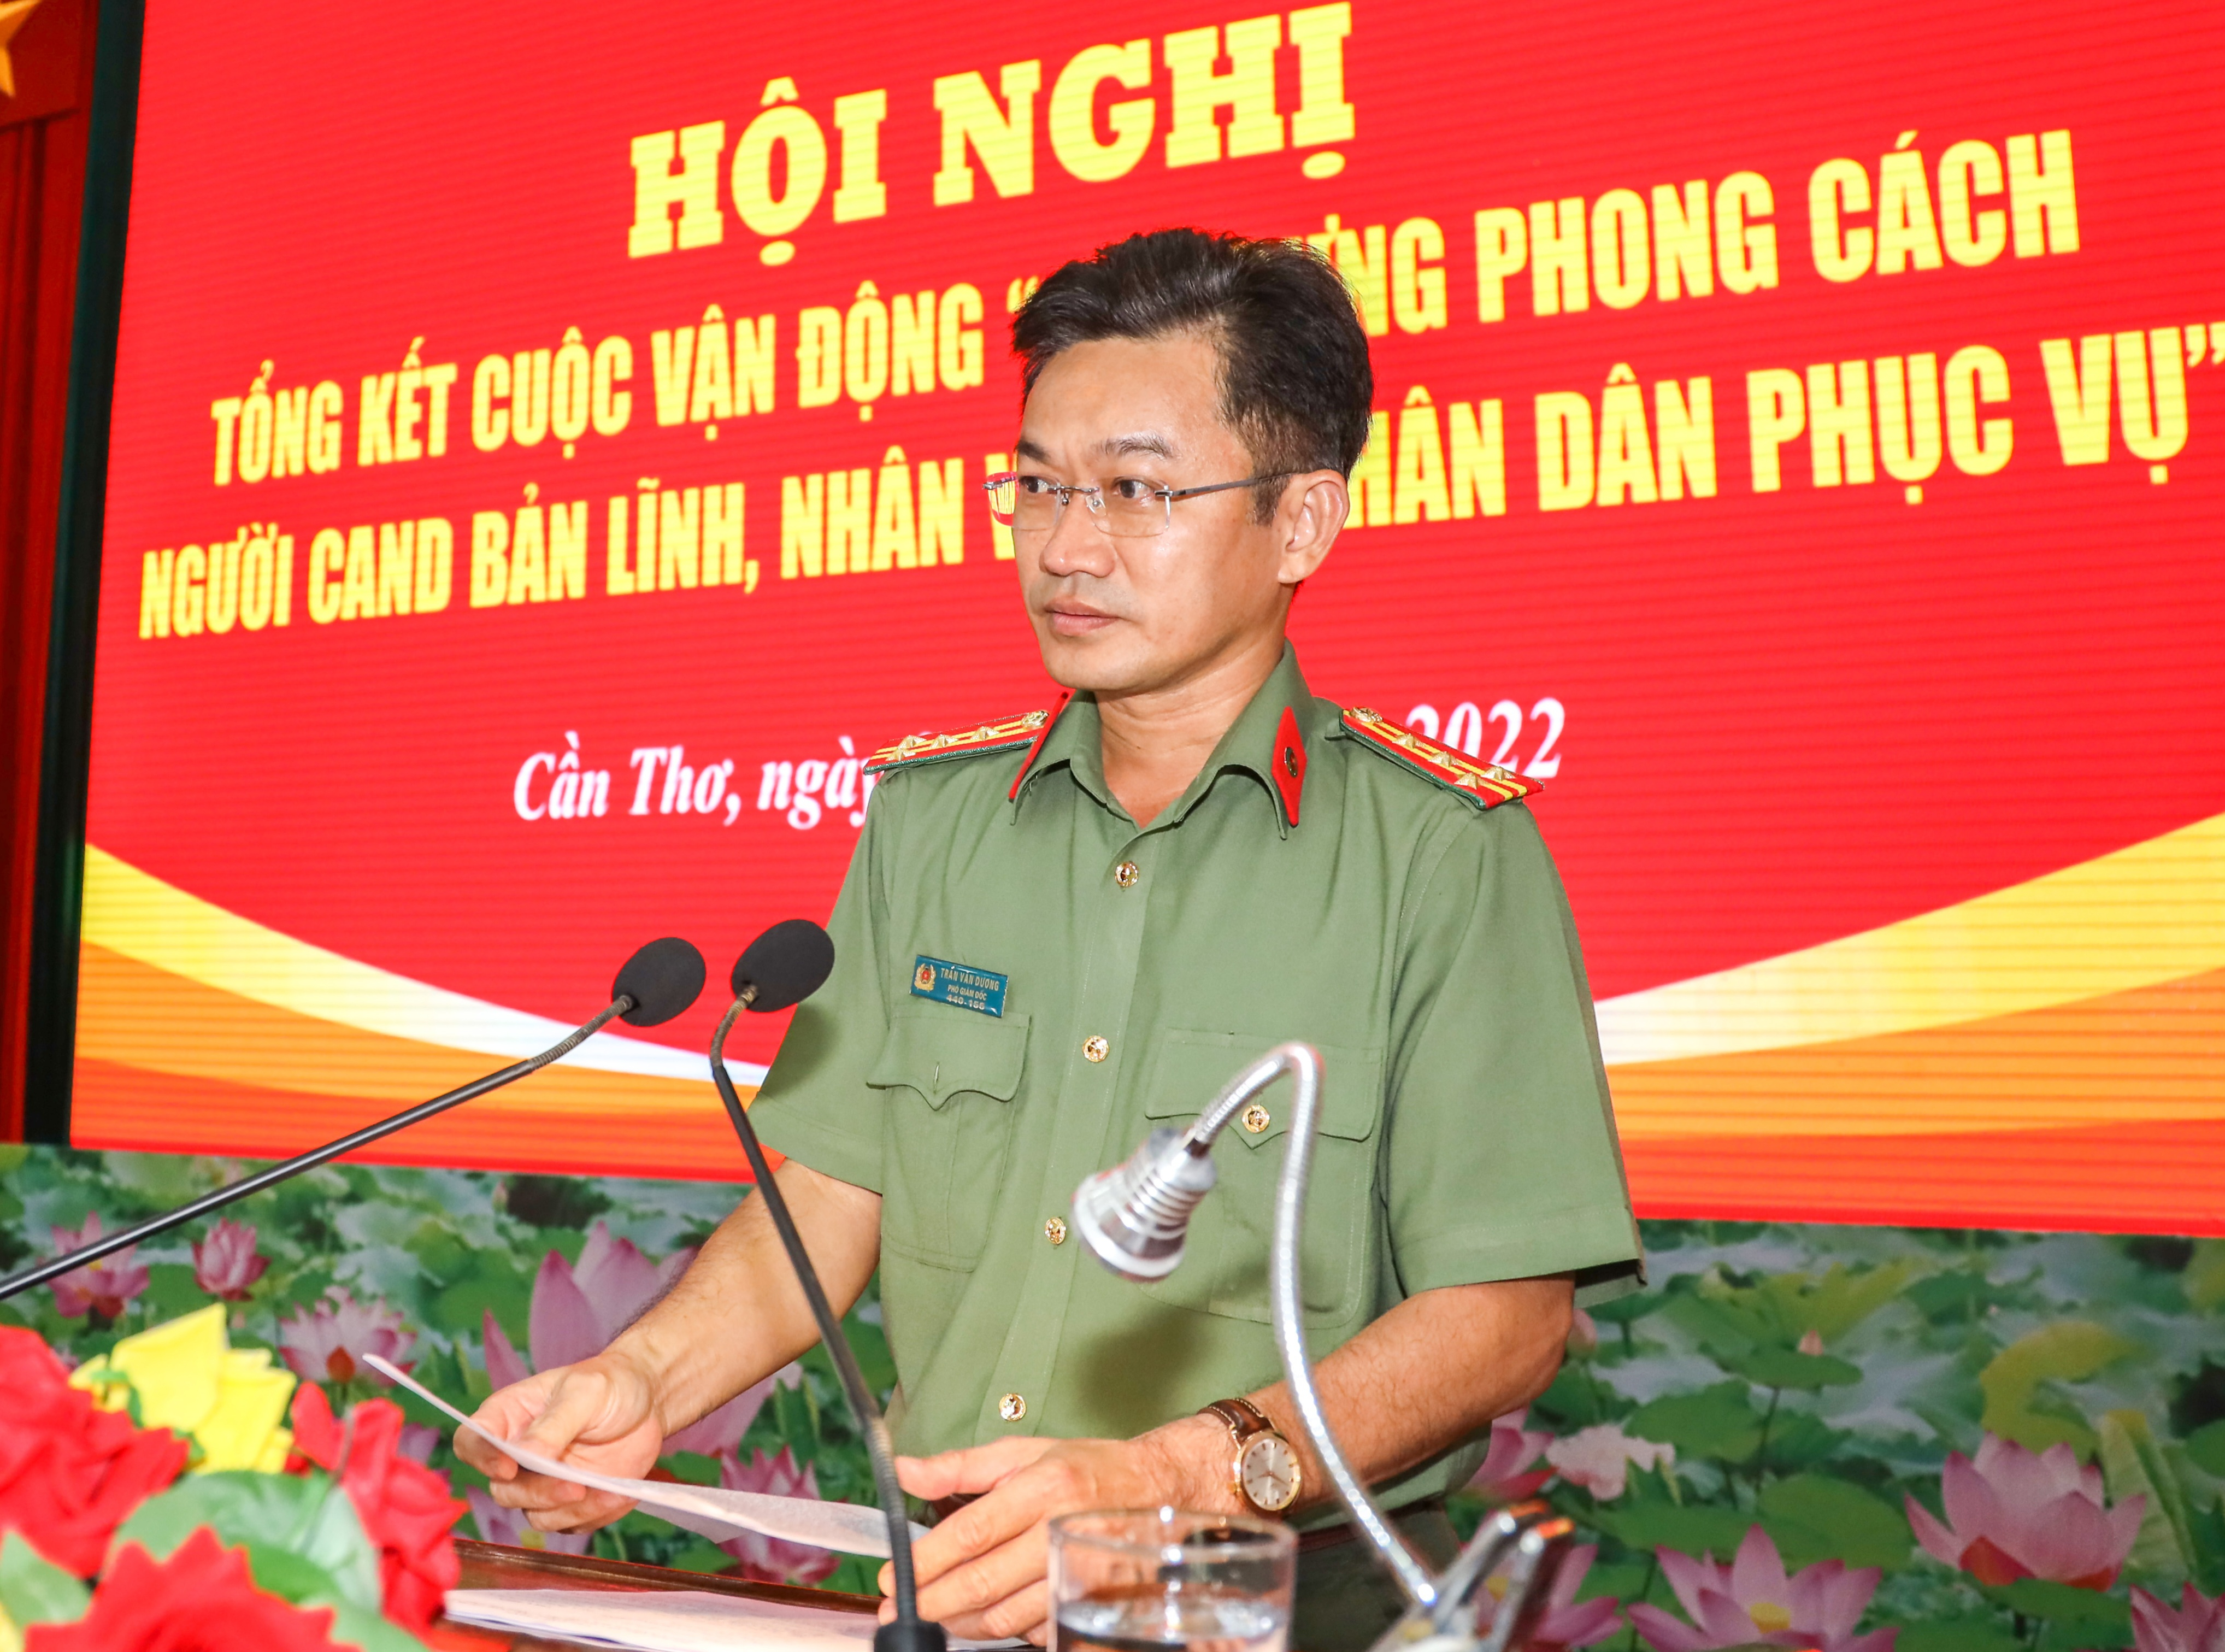 Đại tá Trần Văn Dương - Ủy viên BCH Đảng bộ thành phố, Phó Bí thư Đảng ủy, Phó Giám đốc Công an TP. Cần Thơ phát biểu chỉ đạo tại hội nghị.